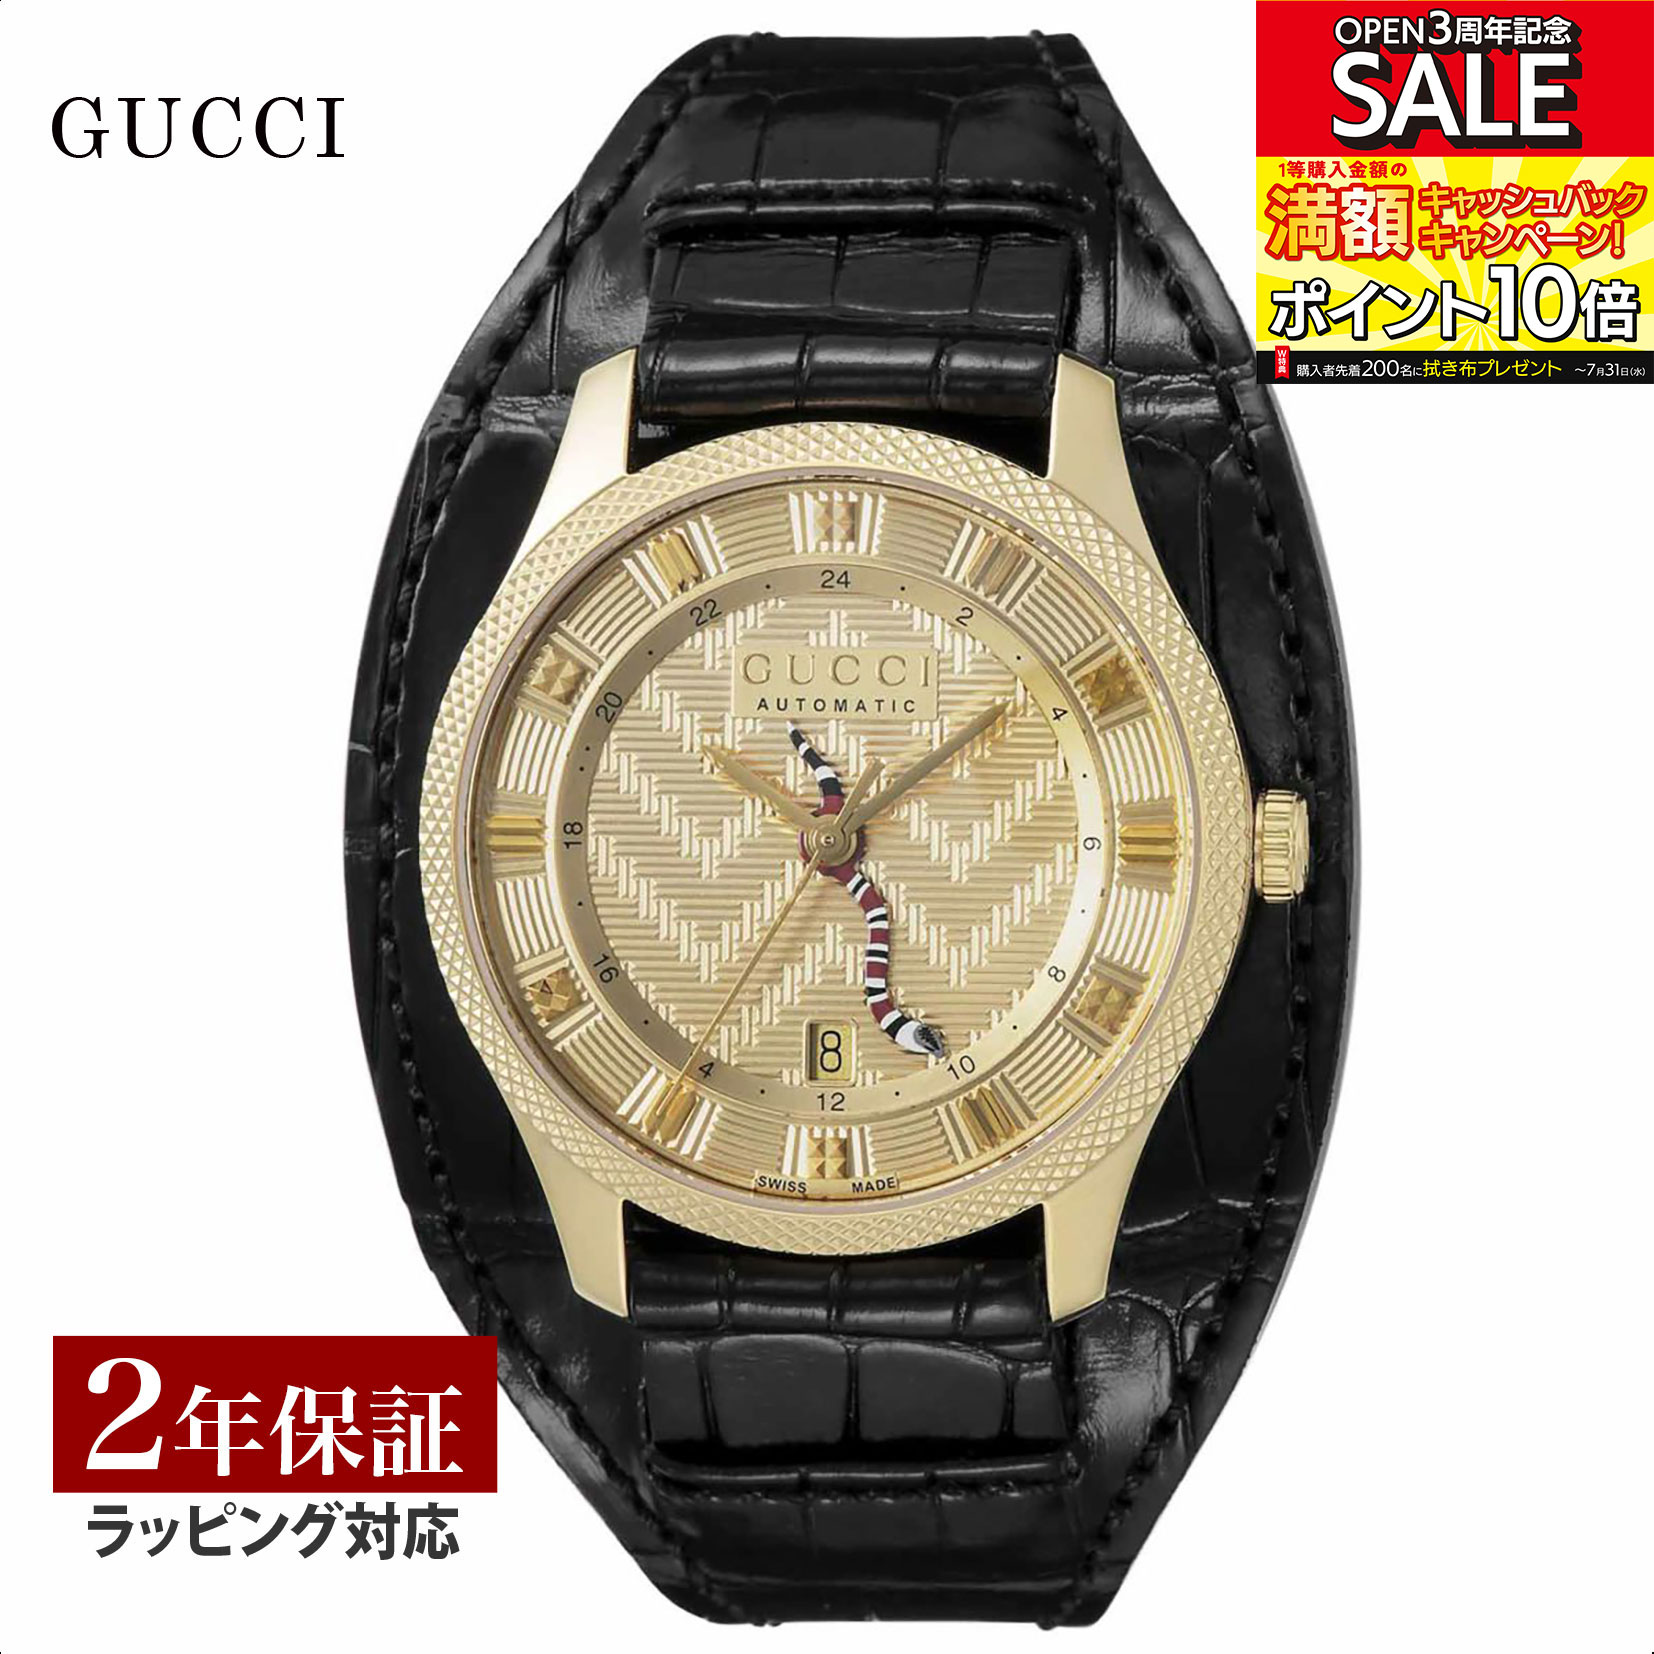 【当店限定】 グッチ GUCCI メンズ 時計 ERYX 自動巻 ゴールド YA126342 時計 腕時計 高級腕時計 ブランド